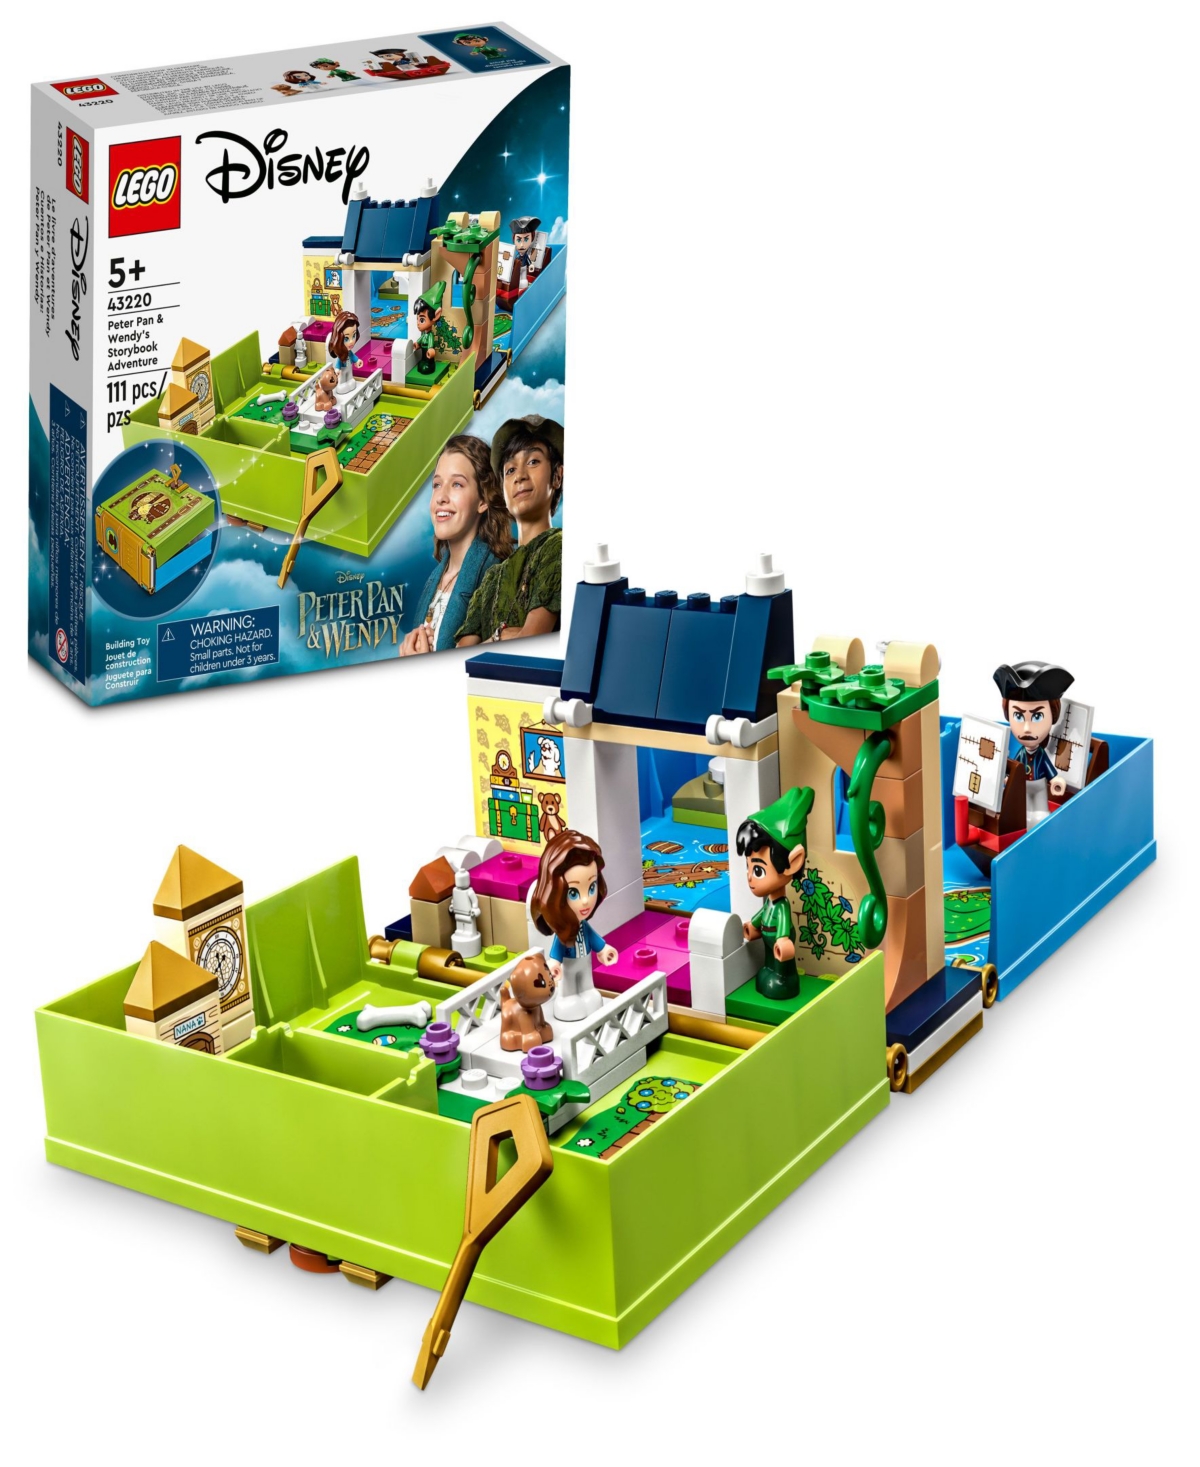 Lego Babies' Disney Peter Pan & Wendy Storybook Adventure Set 43220 In Green